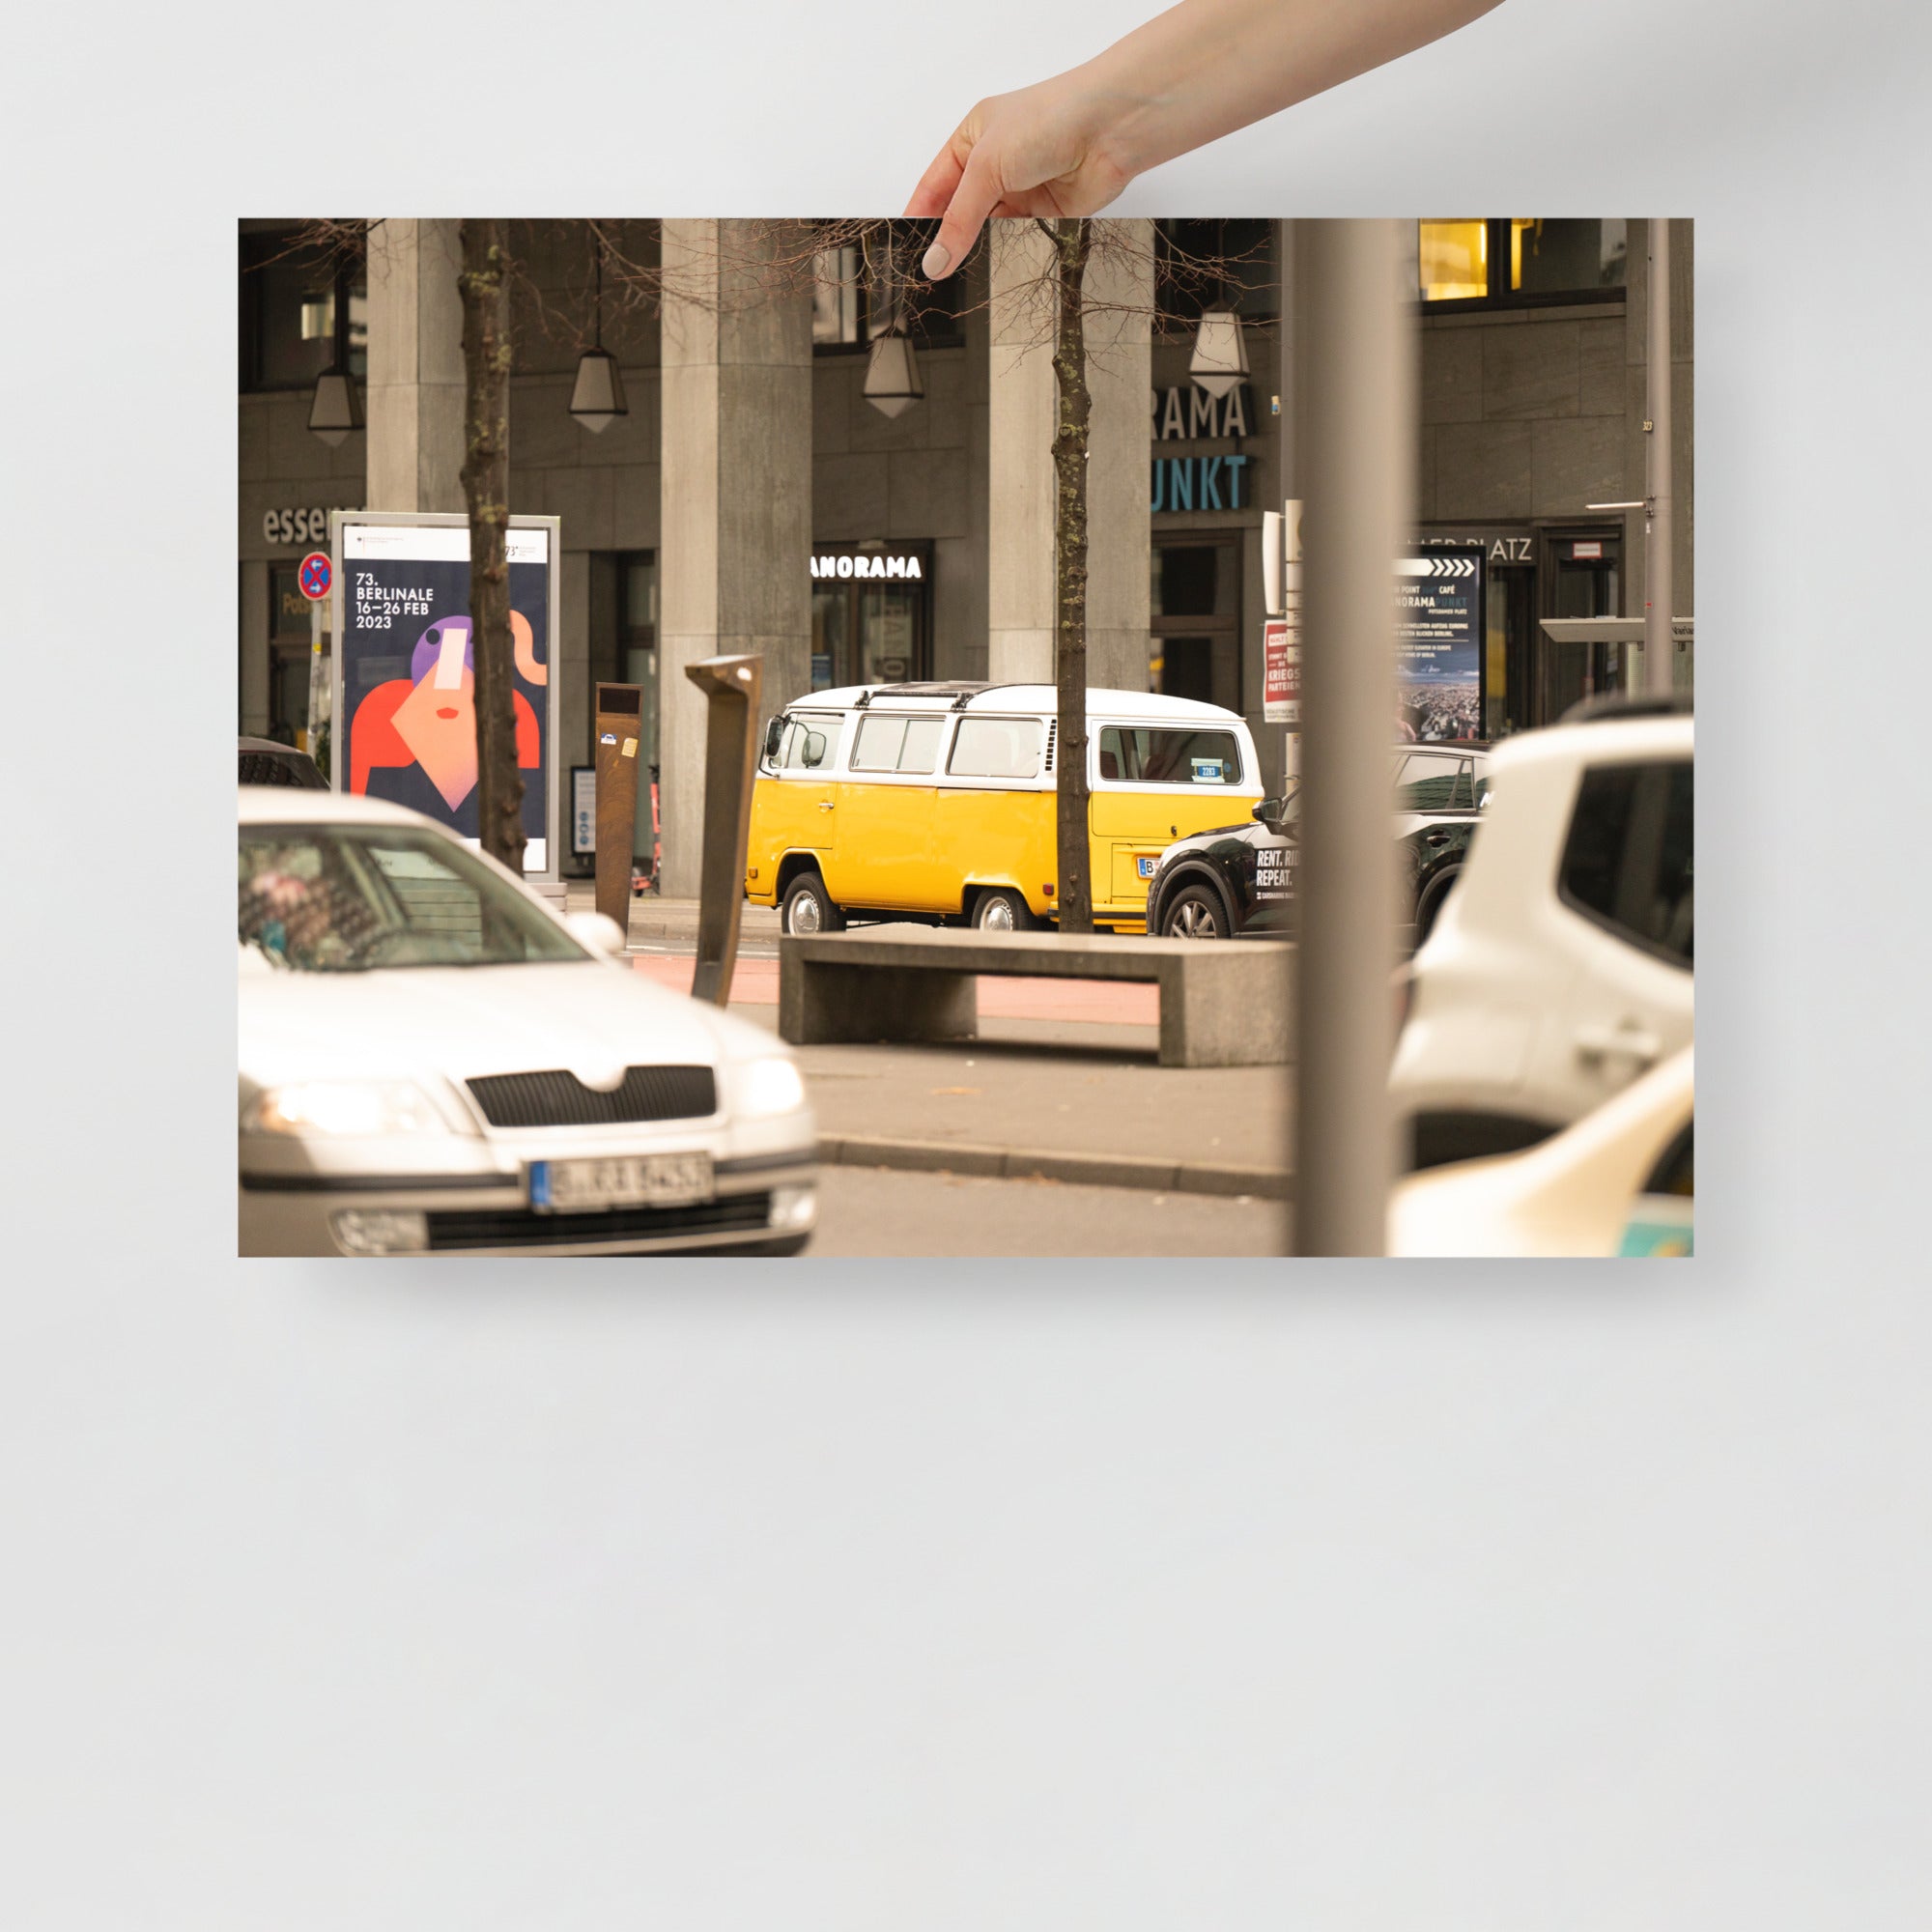 Poster mural - Combi Volkswagen – Photographie de rue à Berlin – Poster photo, poster XXL, Photo d’art, photographie murale et des posters muraux des photographies de rue unique au monde. La boutique de posters créée par un Photographe français.